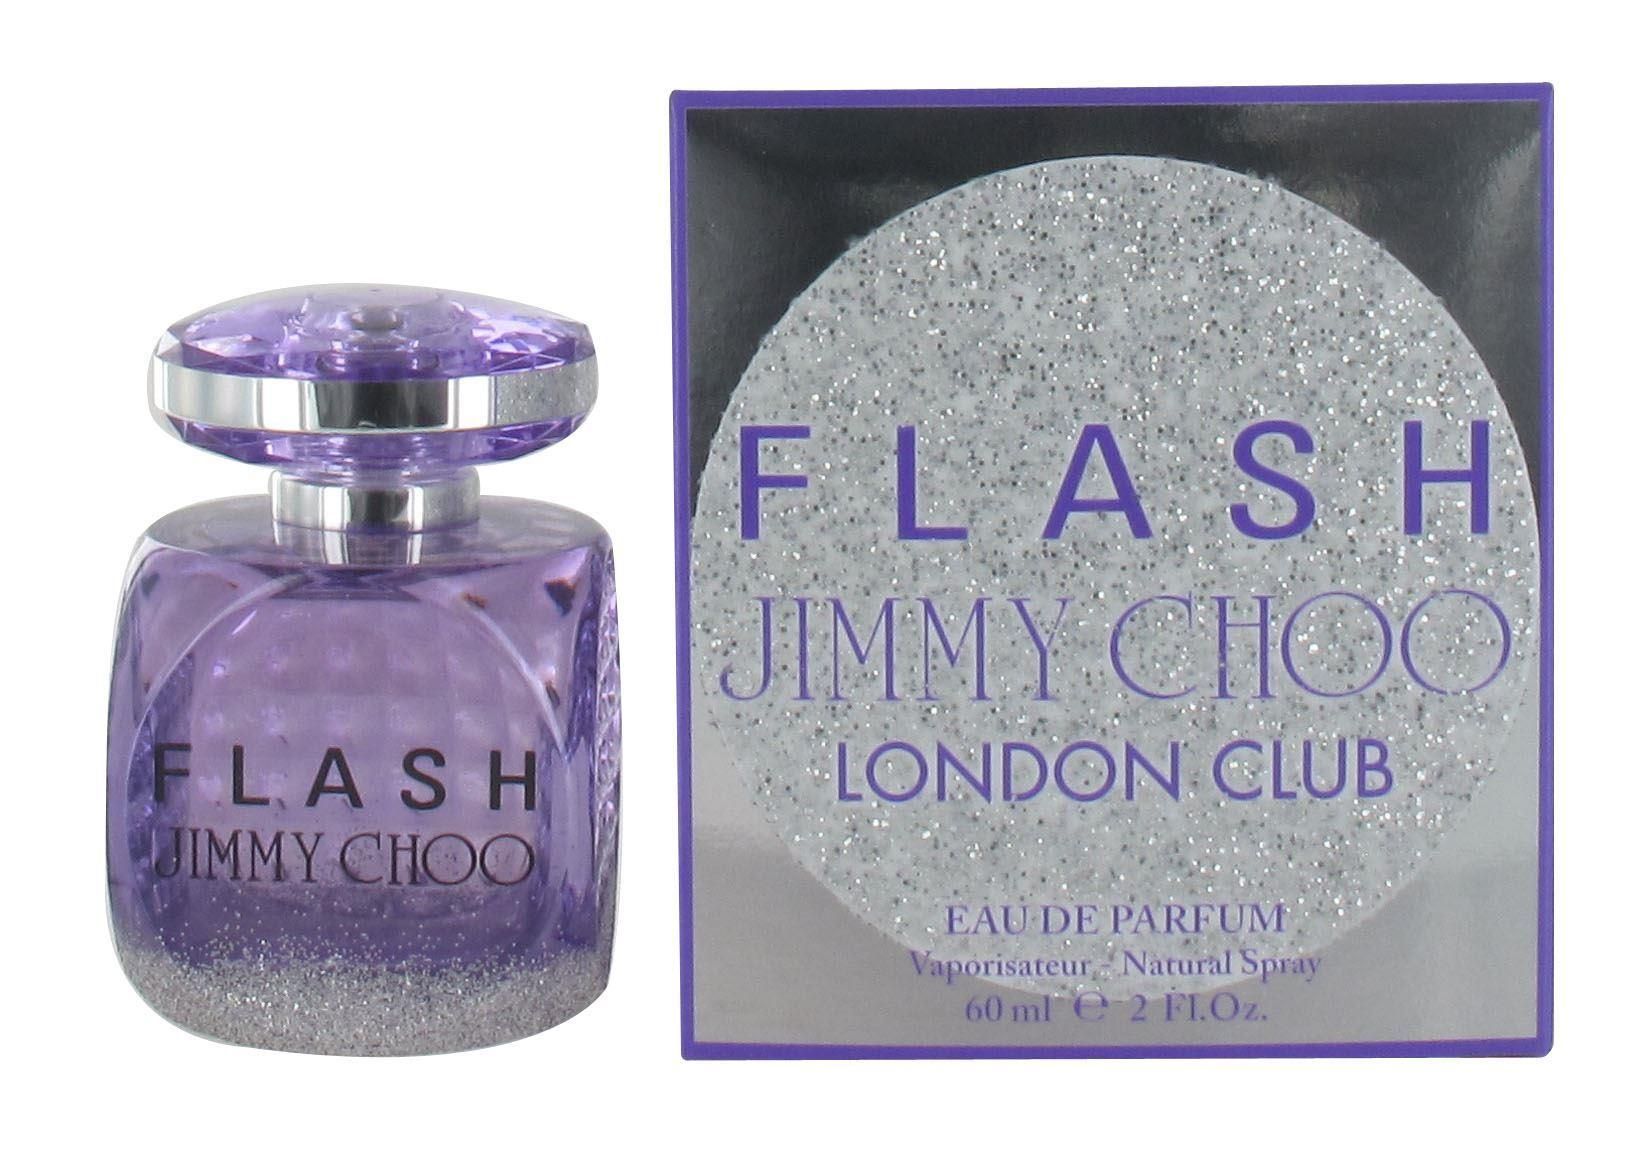 Jimmy Choo Flash London Club 60ml Eau de Parfum Spray for Her